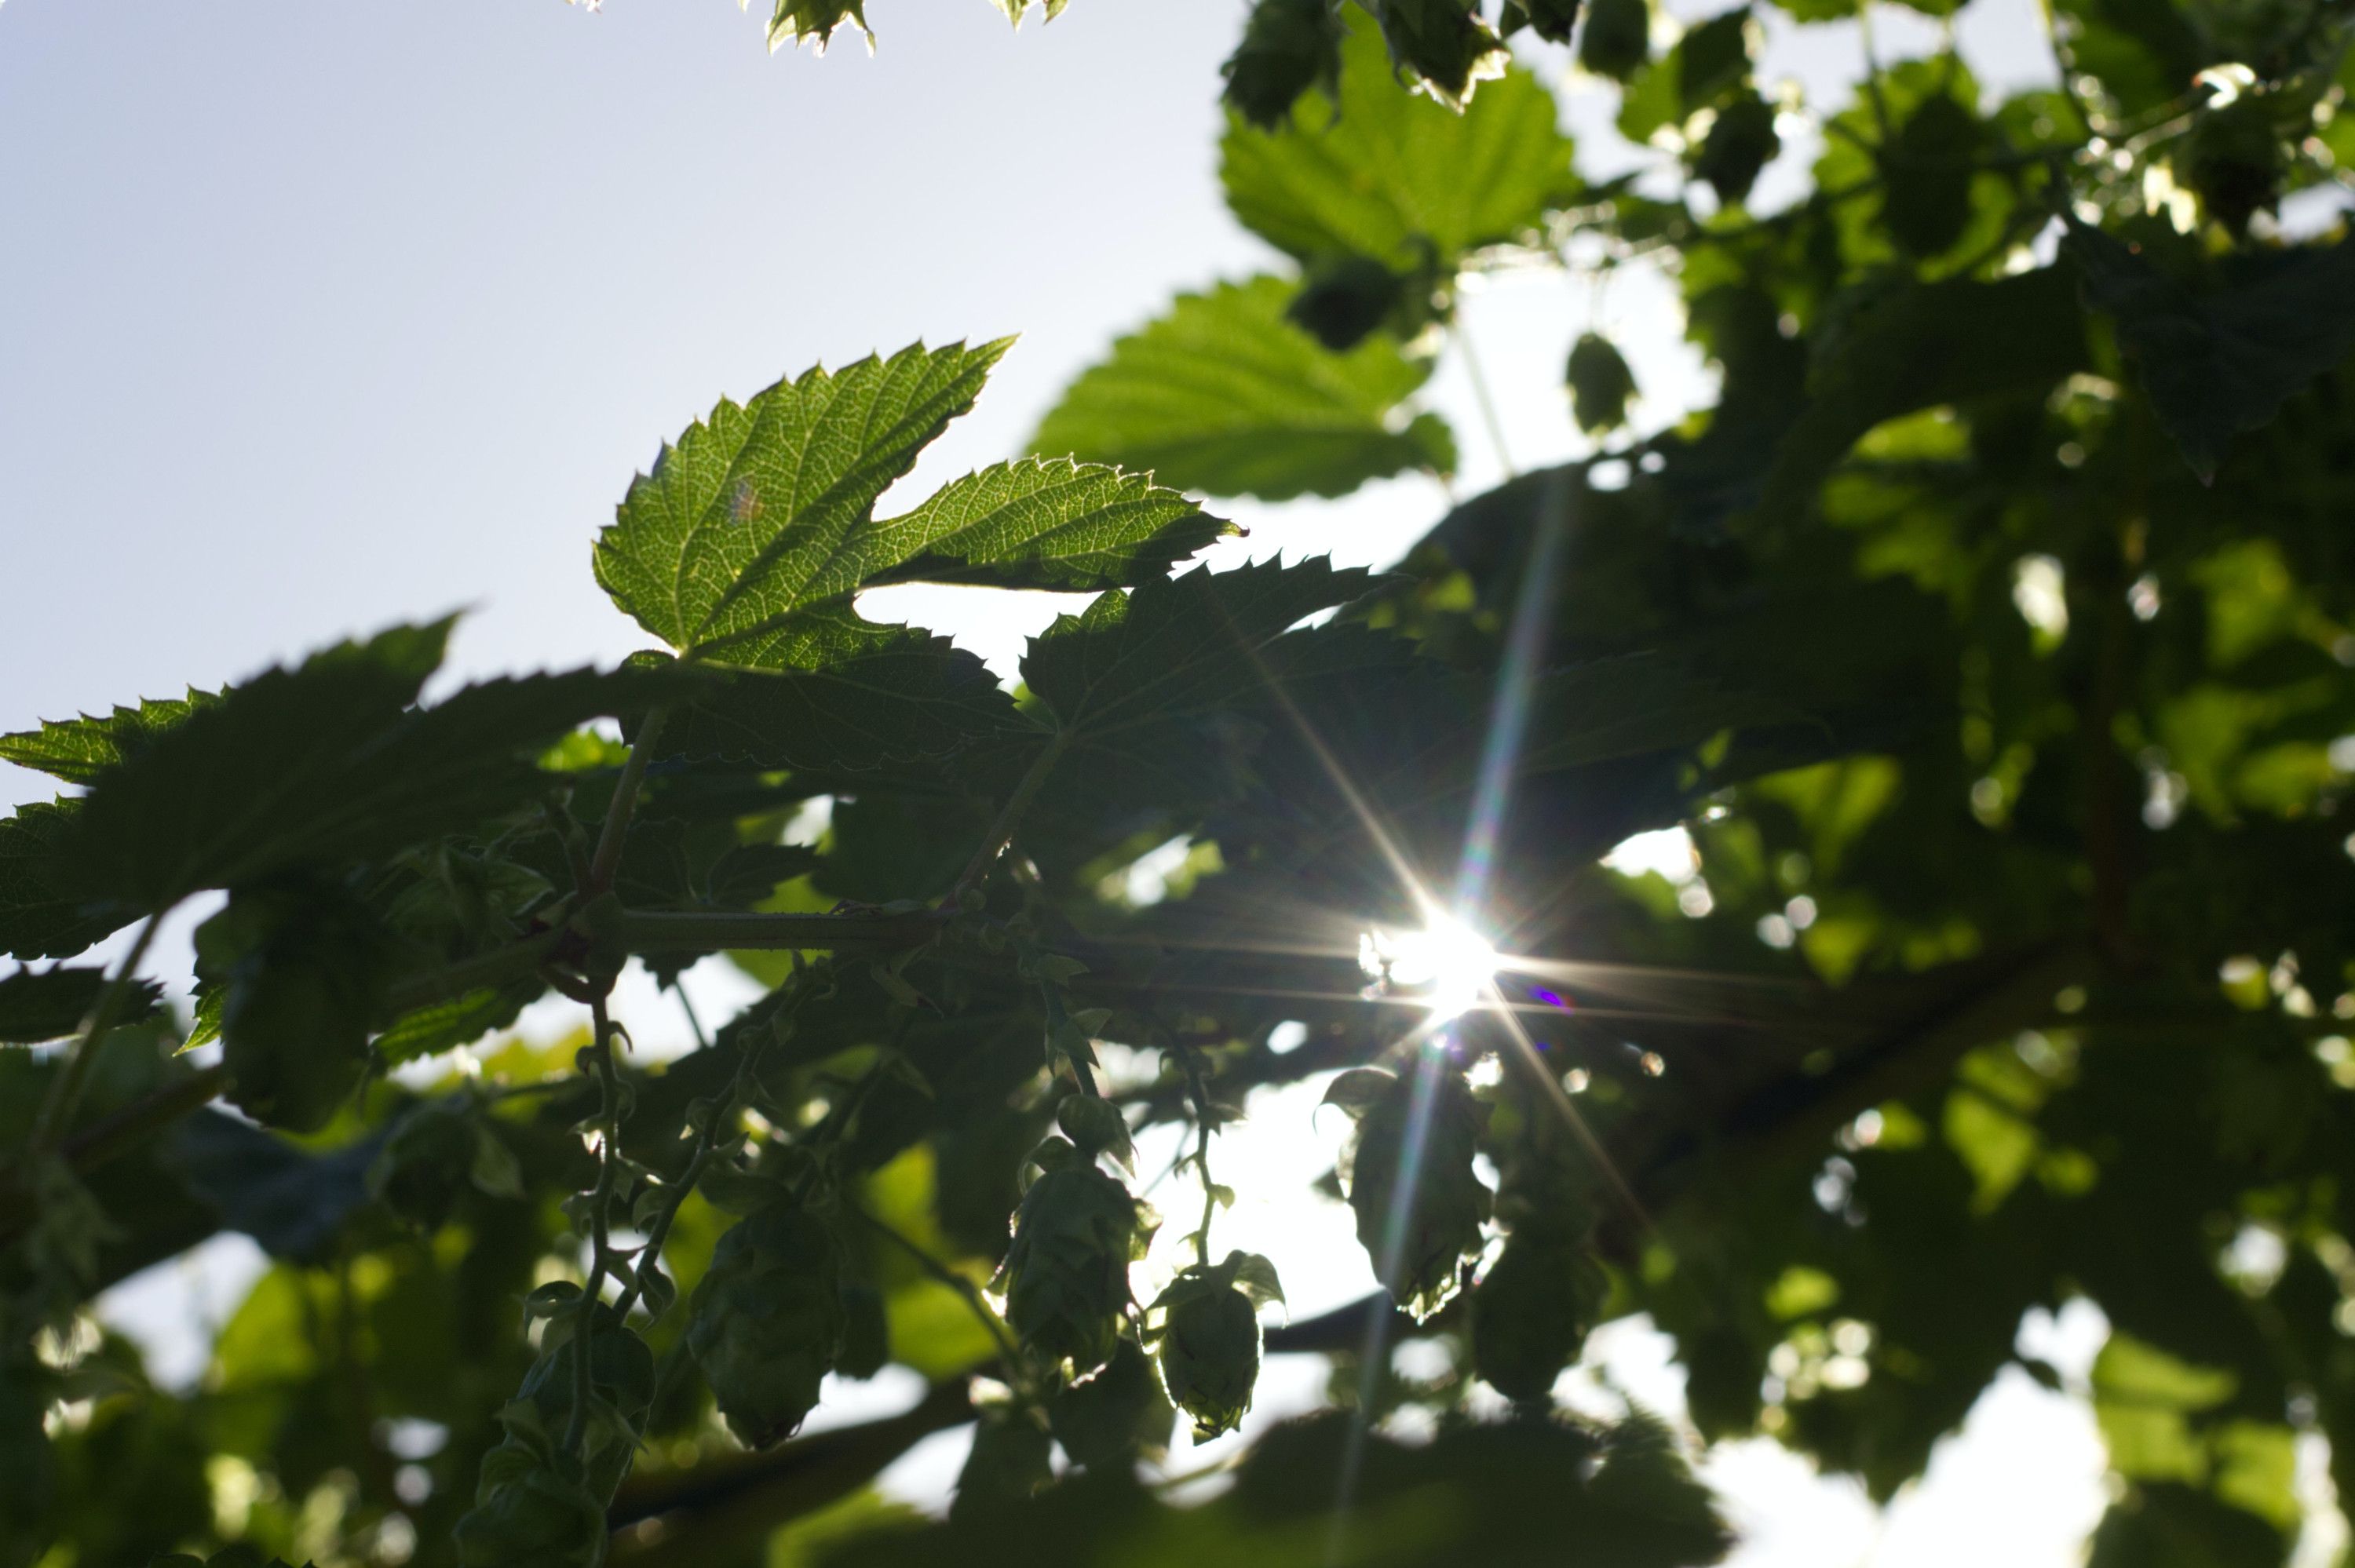 Kategorie Headerbild nachhaltig und klimagerecht: Sonne schein durch Blattwerk eines Baumes.